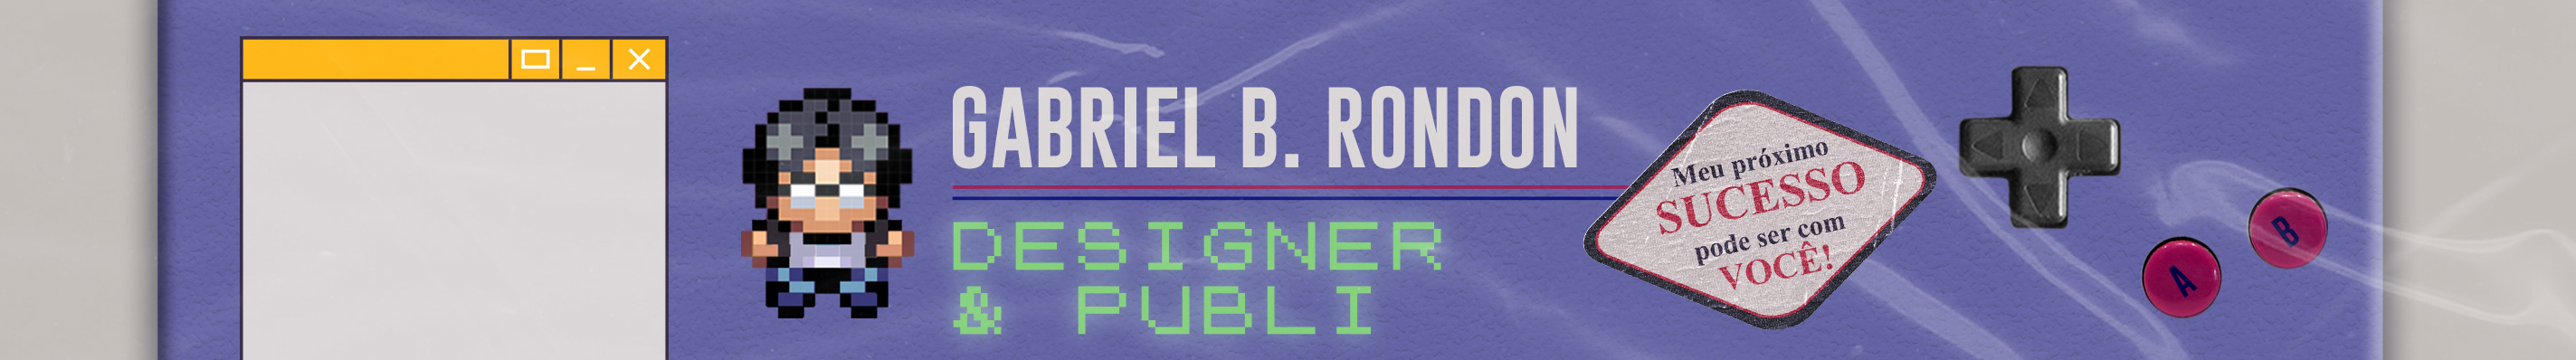 Bannière de profil de Gabriel Rondon